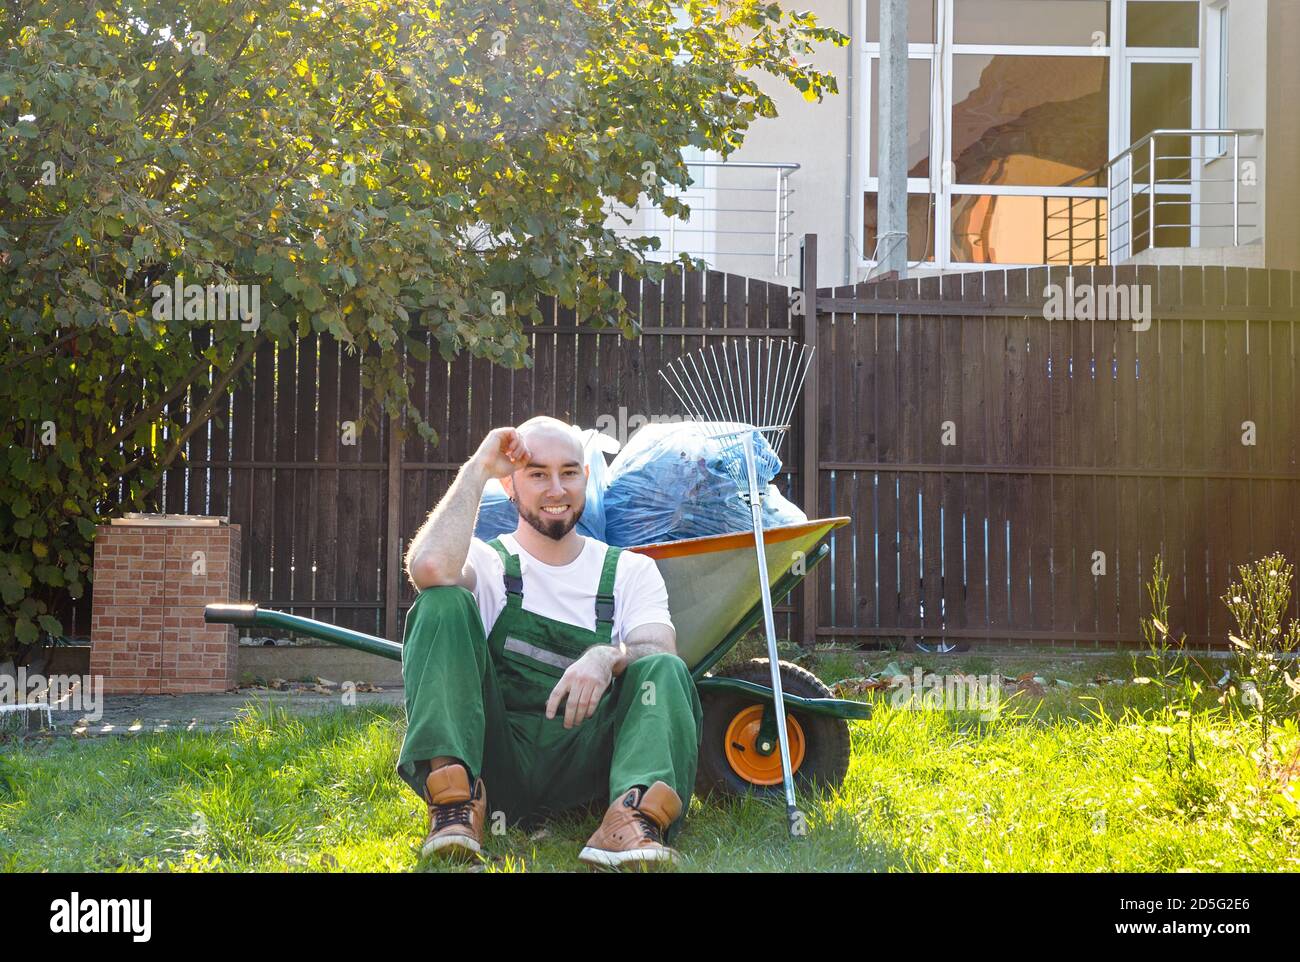 Il giardiniere nell'uniforme verde sta poggiando sull'erba. Sorriso e buon umore. Il sole splende sul lato destro. Foto Stock